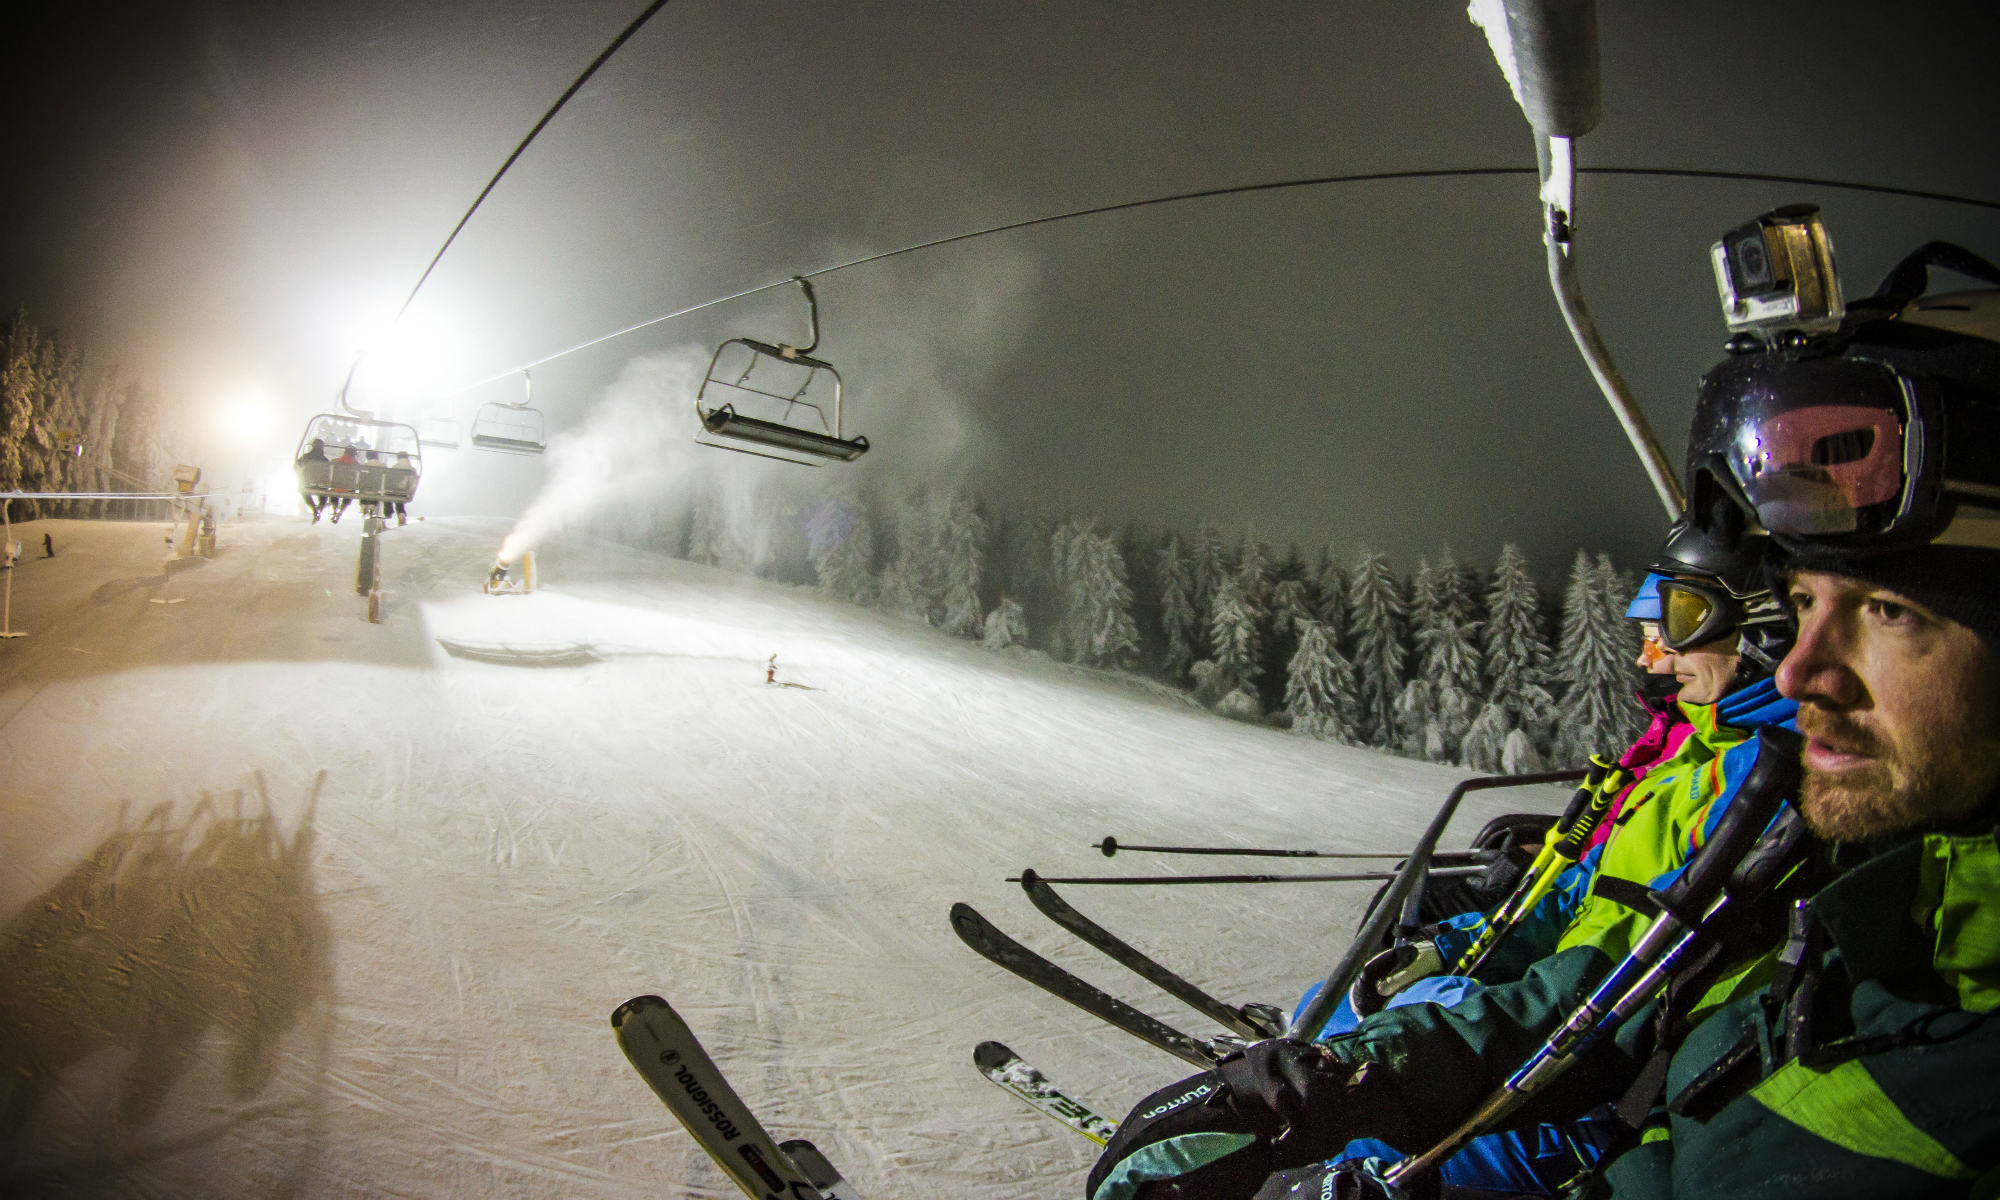 Skiërs hebben vanuit een skilift uitzicht op een verlichte piste in Winterberg.